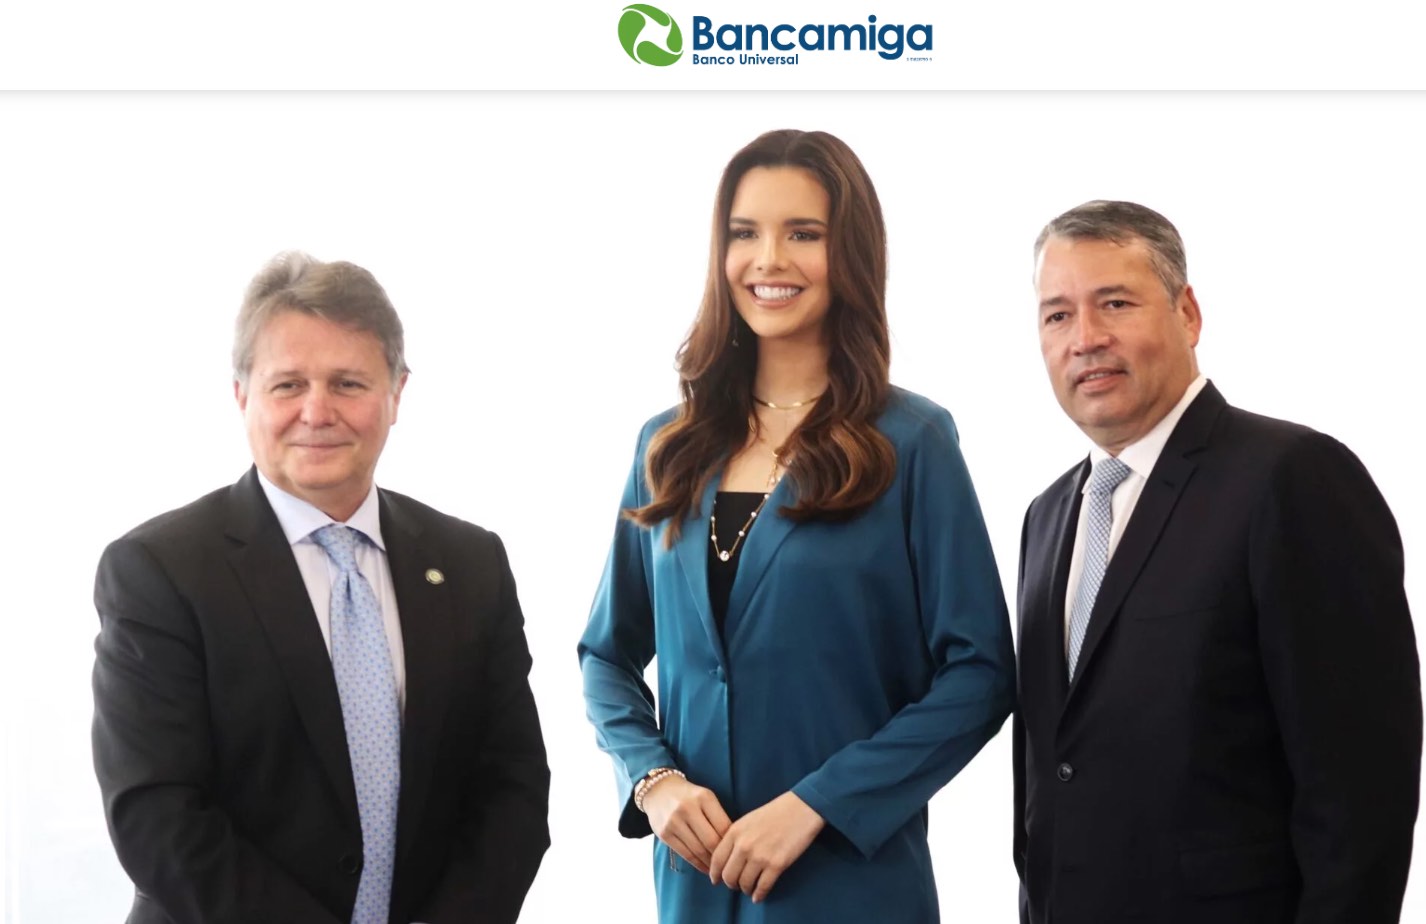 Carmelo de Grazia, Presidente de Bancamiga: Bancamiga sigue impulsando valores con la comunidad